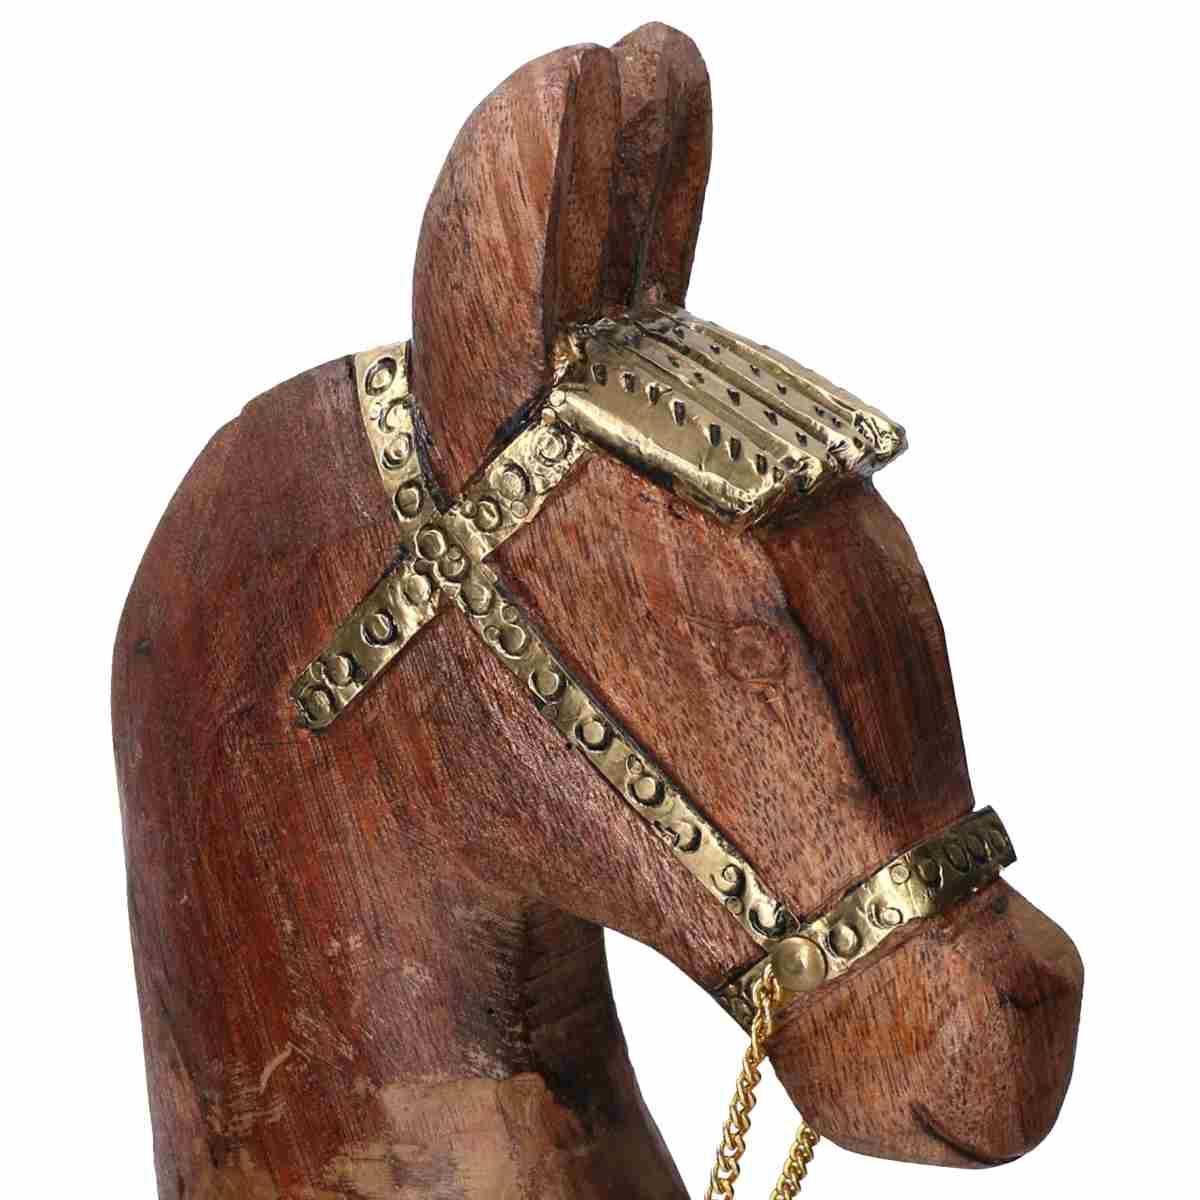 Cavallo a Dondolo in Legno cm.50x13xh56